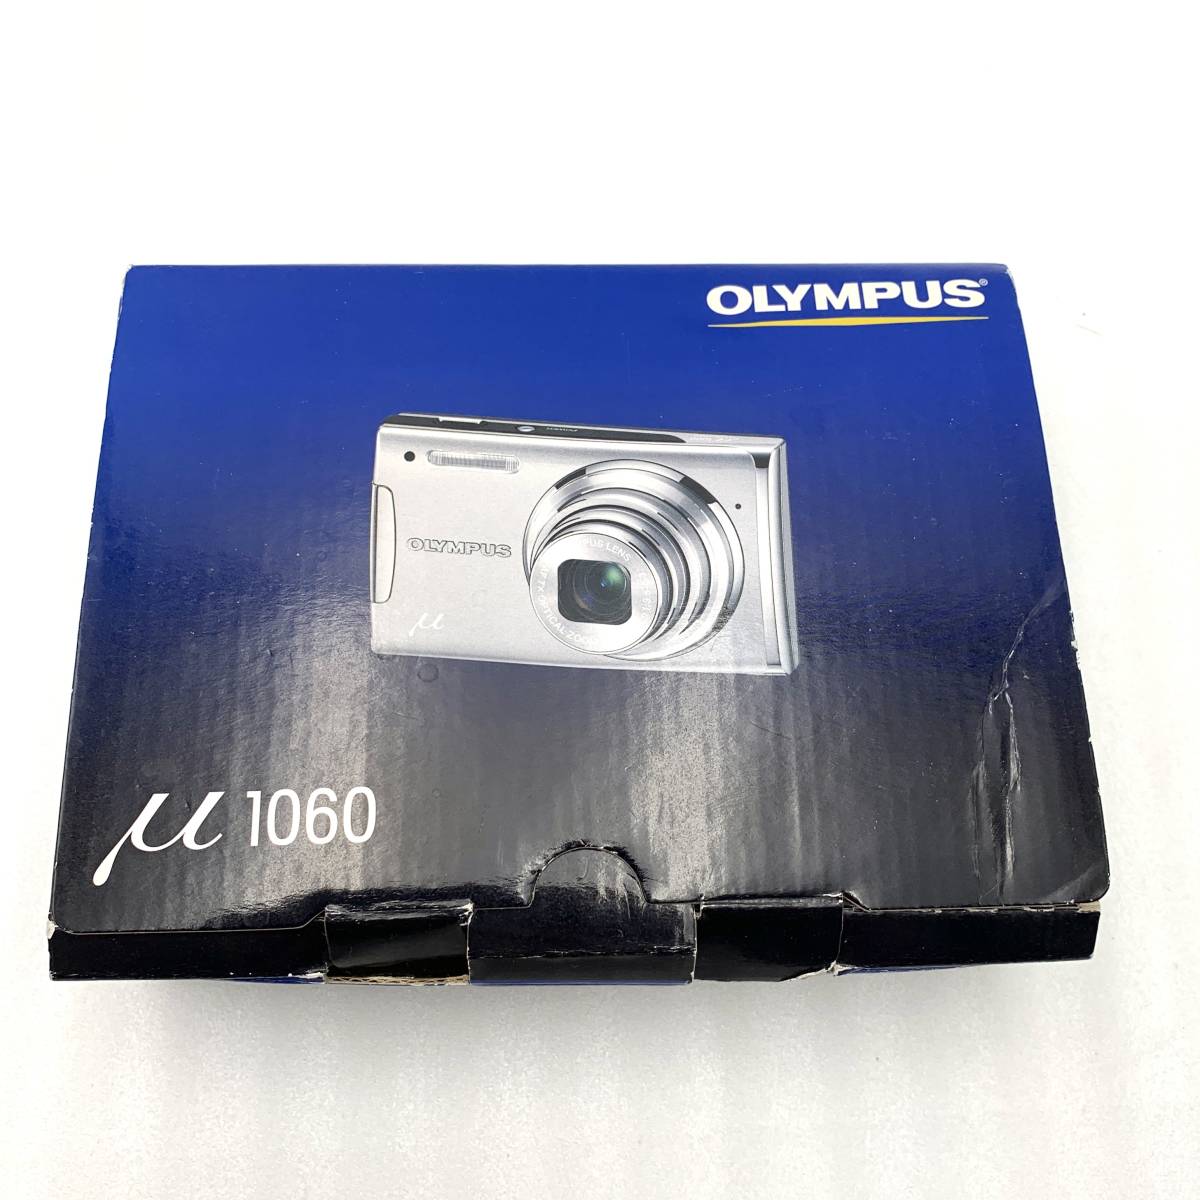  Olympus OLYMPUS μ1060 цифровая камера рабочее состояние подтверждено наружная коробка есть 240206150